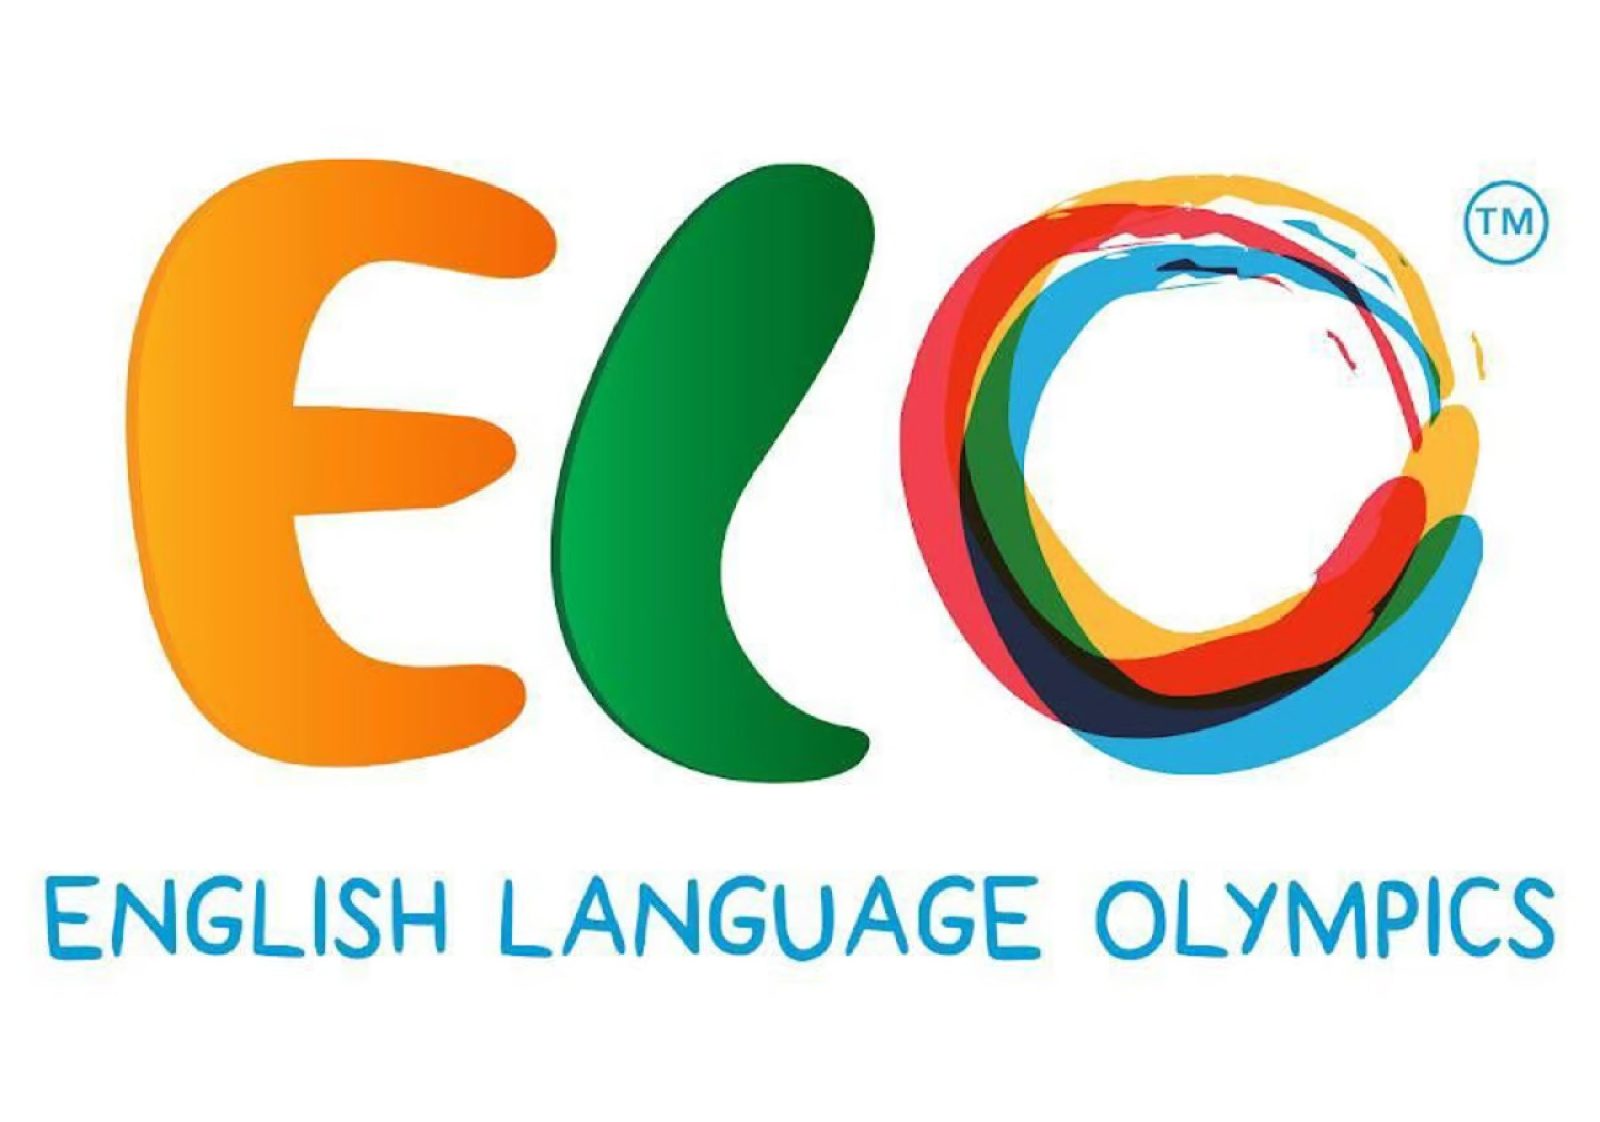 مدارس الرواد للبنات في البدائع تحقق فوزًا مذهلاً في أولمبياد اللغة الإنجليزية